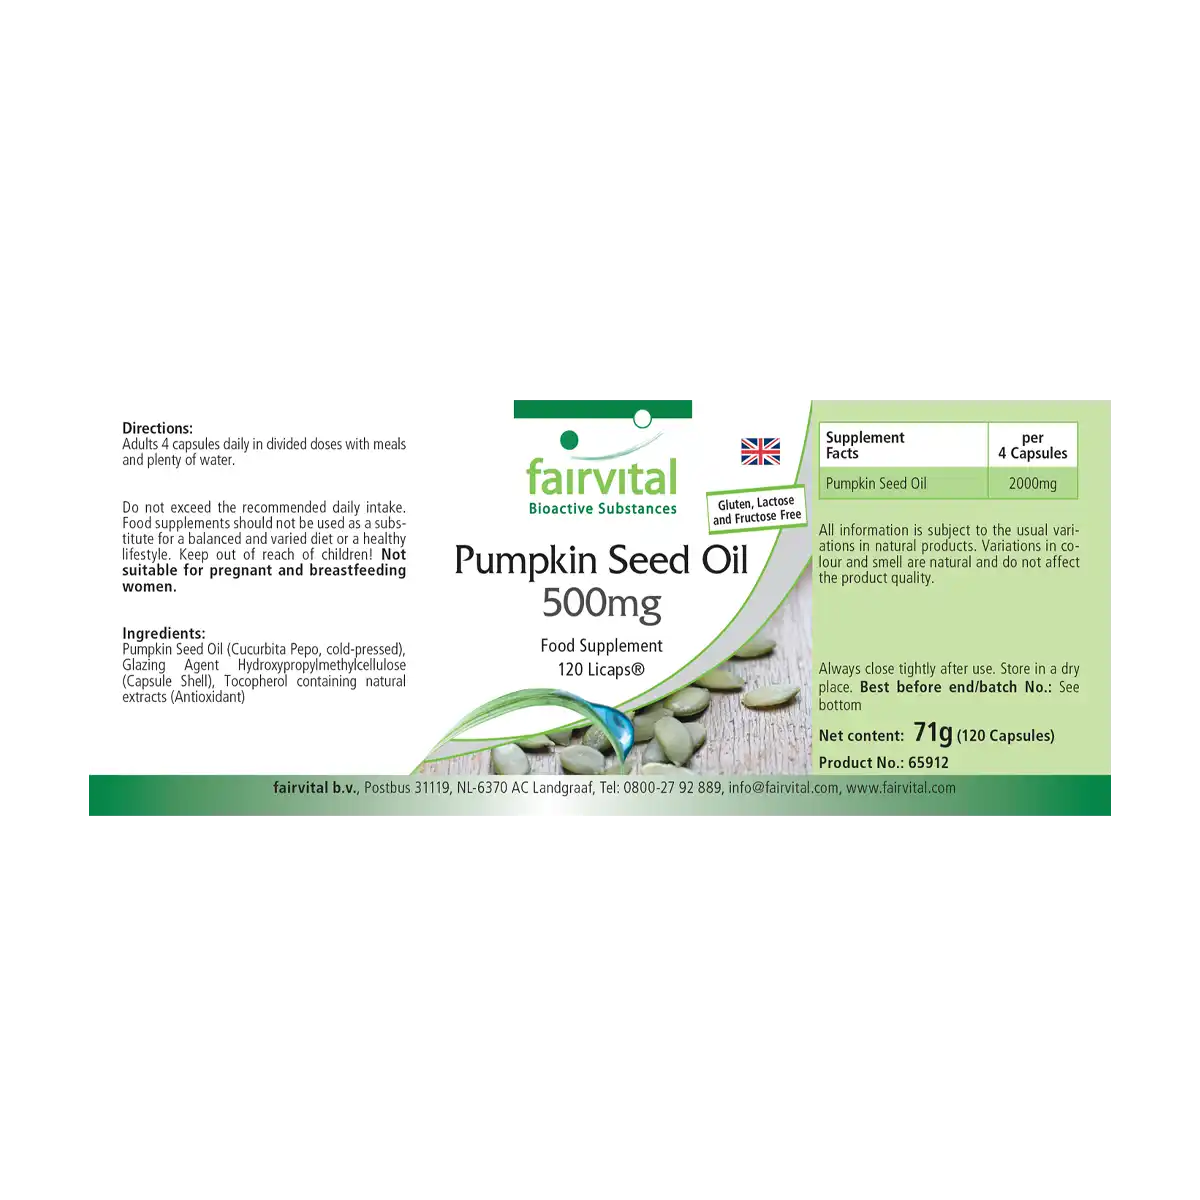 Pumpkin seed oil 500mg - 120 LiCaps®